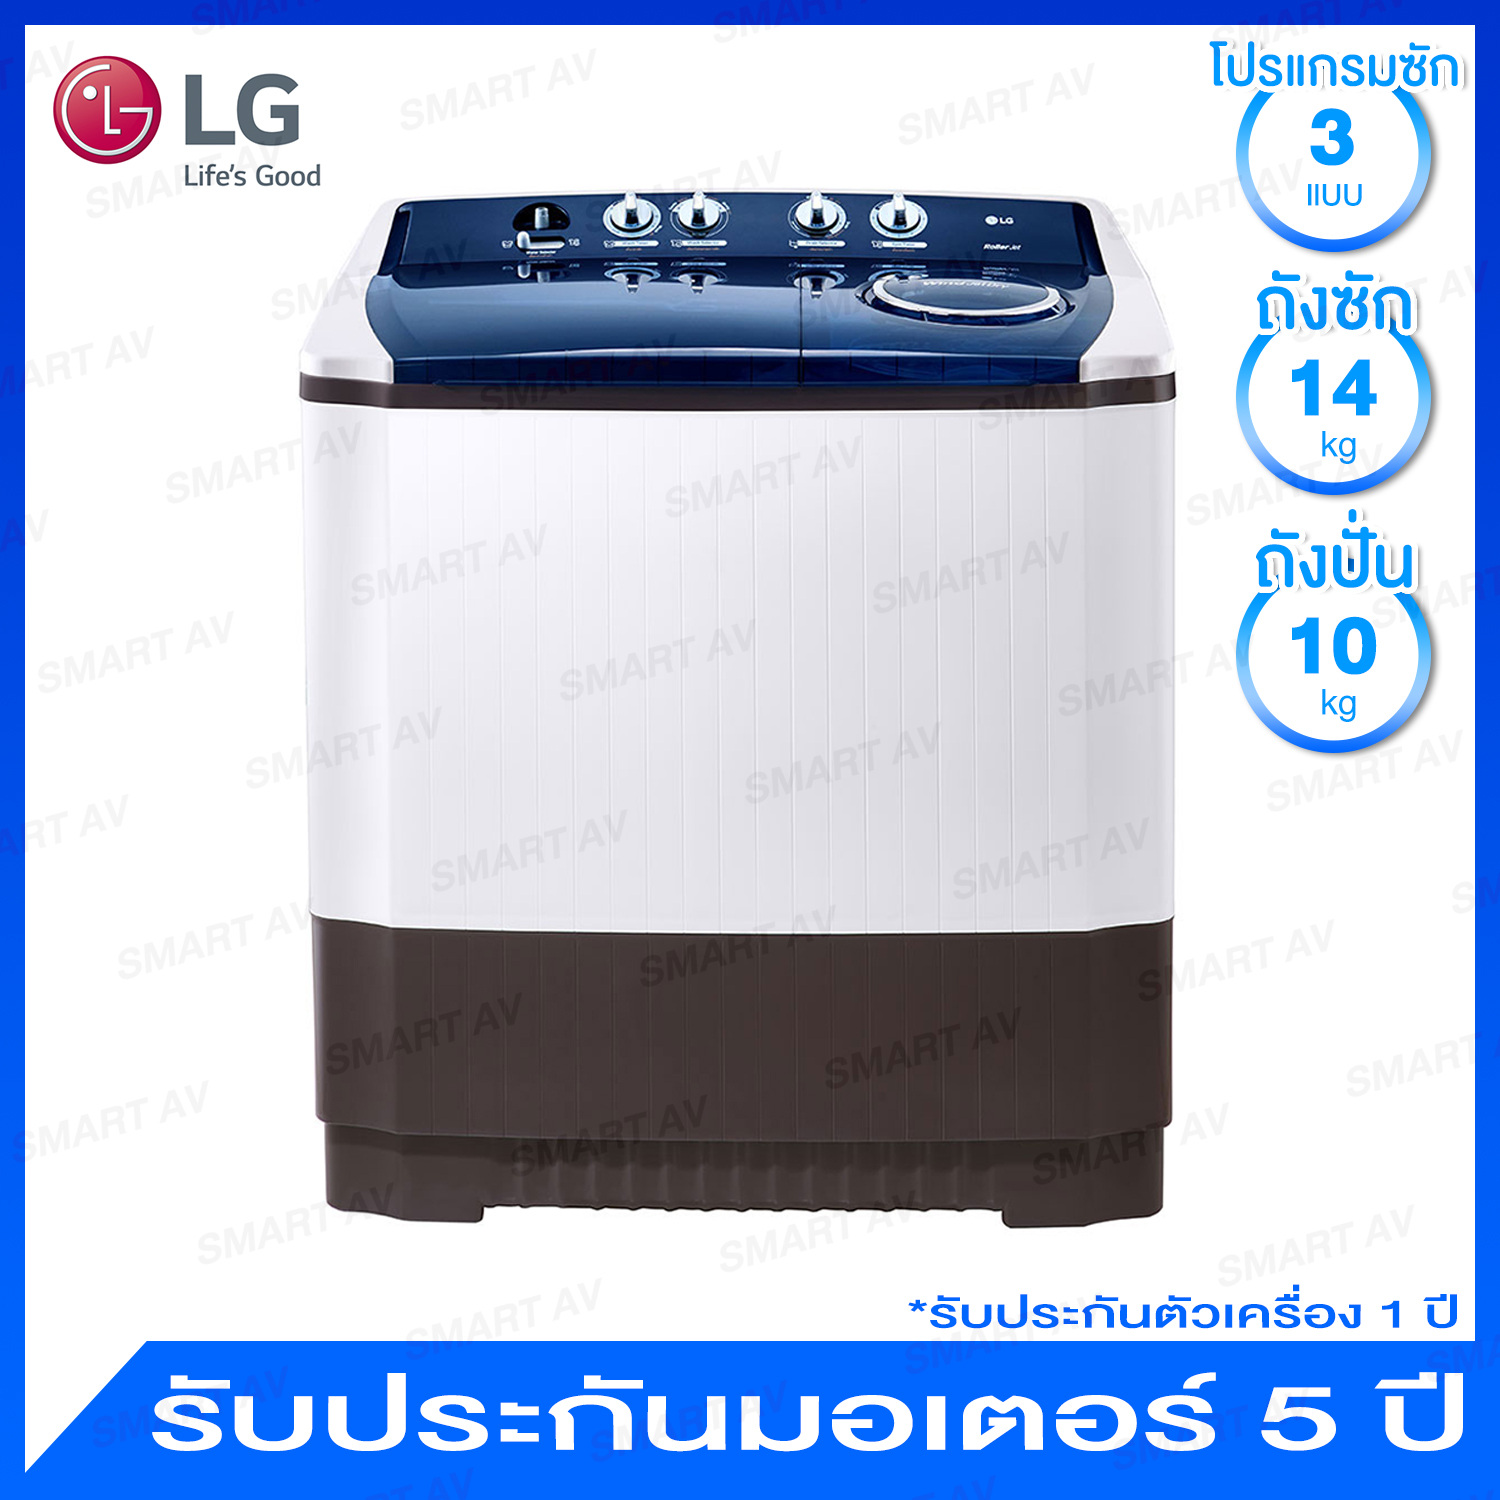 LG เครื่องซักผ้าฝาบนแบบ 2 ถัง ความจุ 14 กก. พร้อม 6 จานซัก แบบ Roller Jet และระบบ Wind Jet Dry รุ่น TT14WAPG